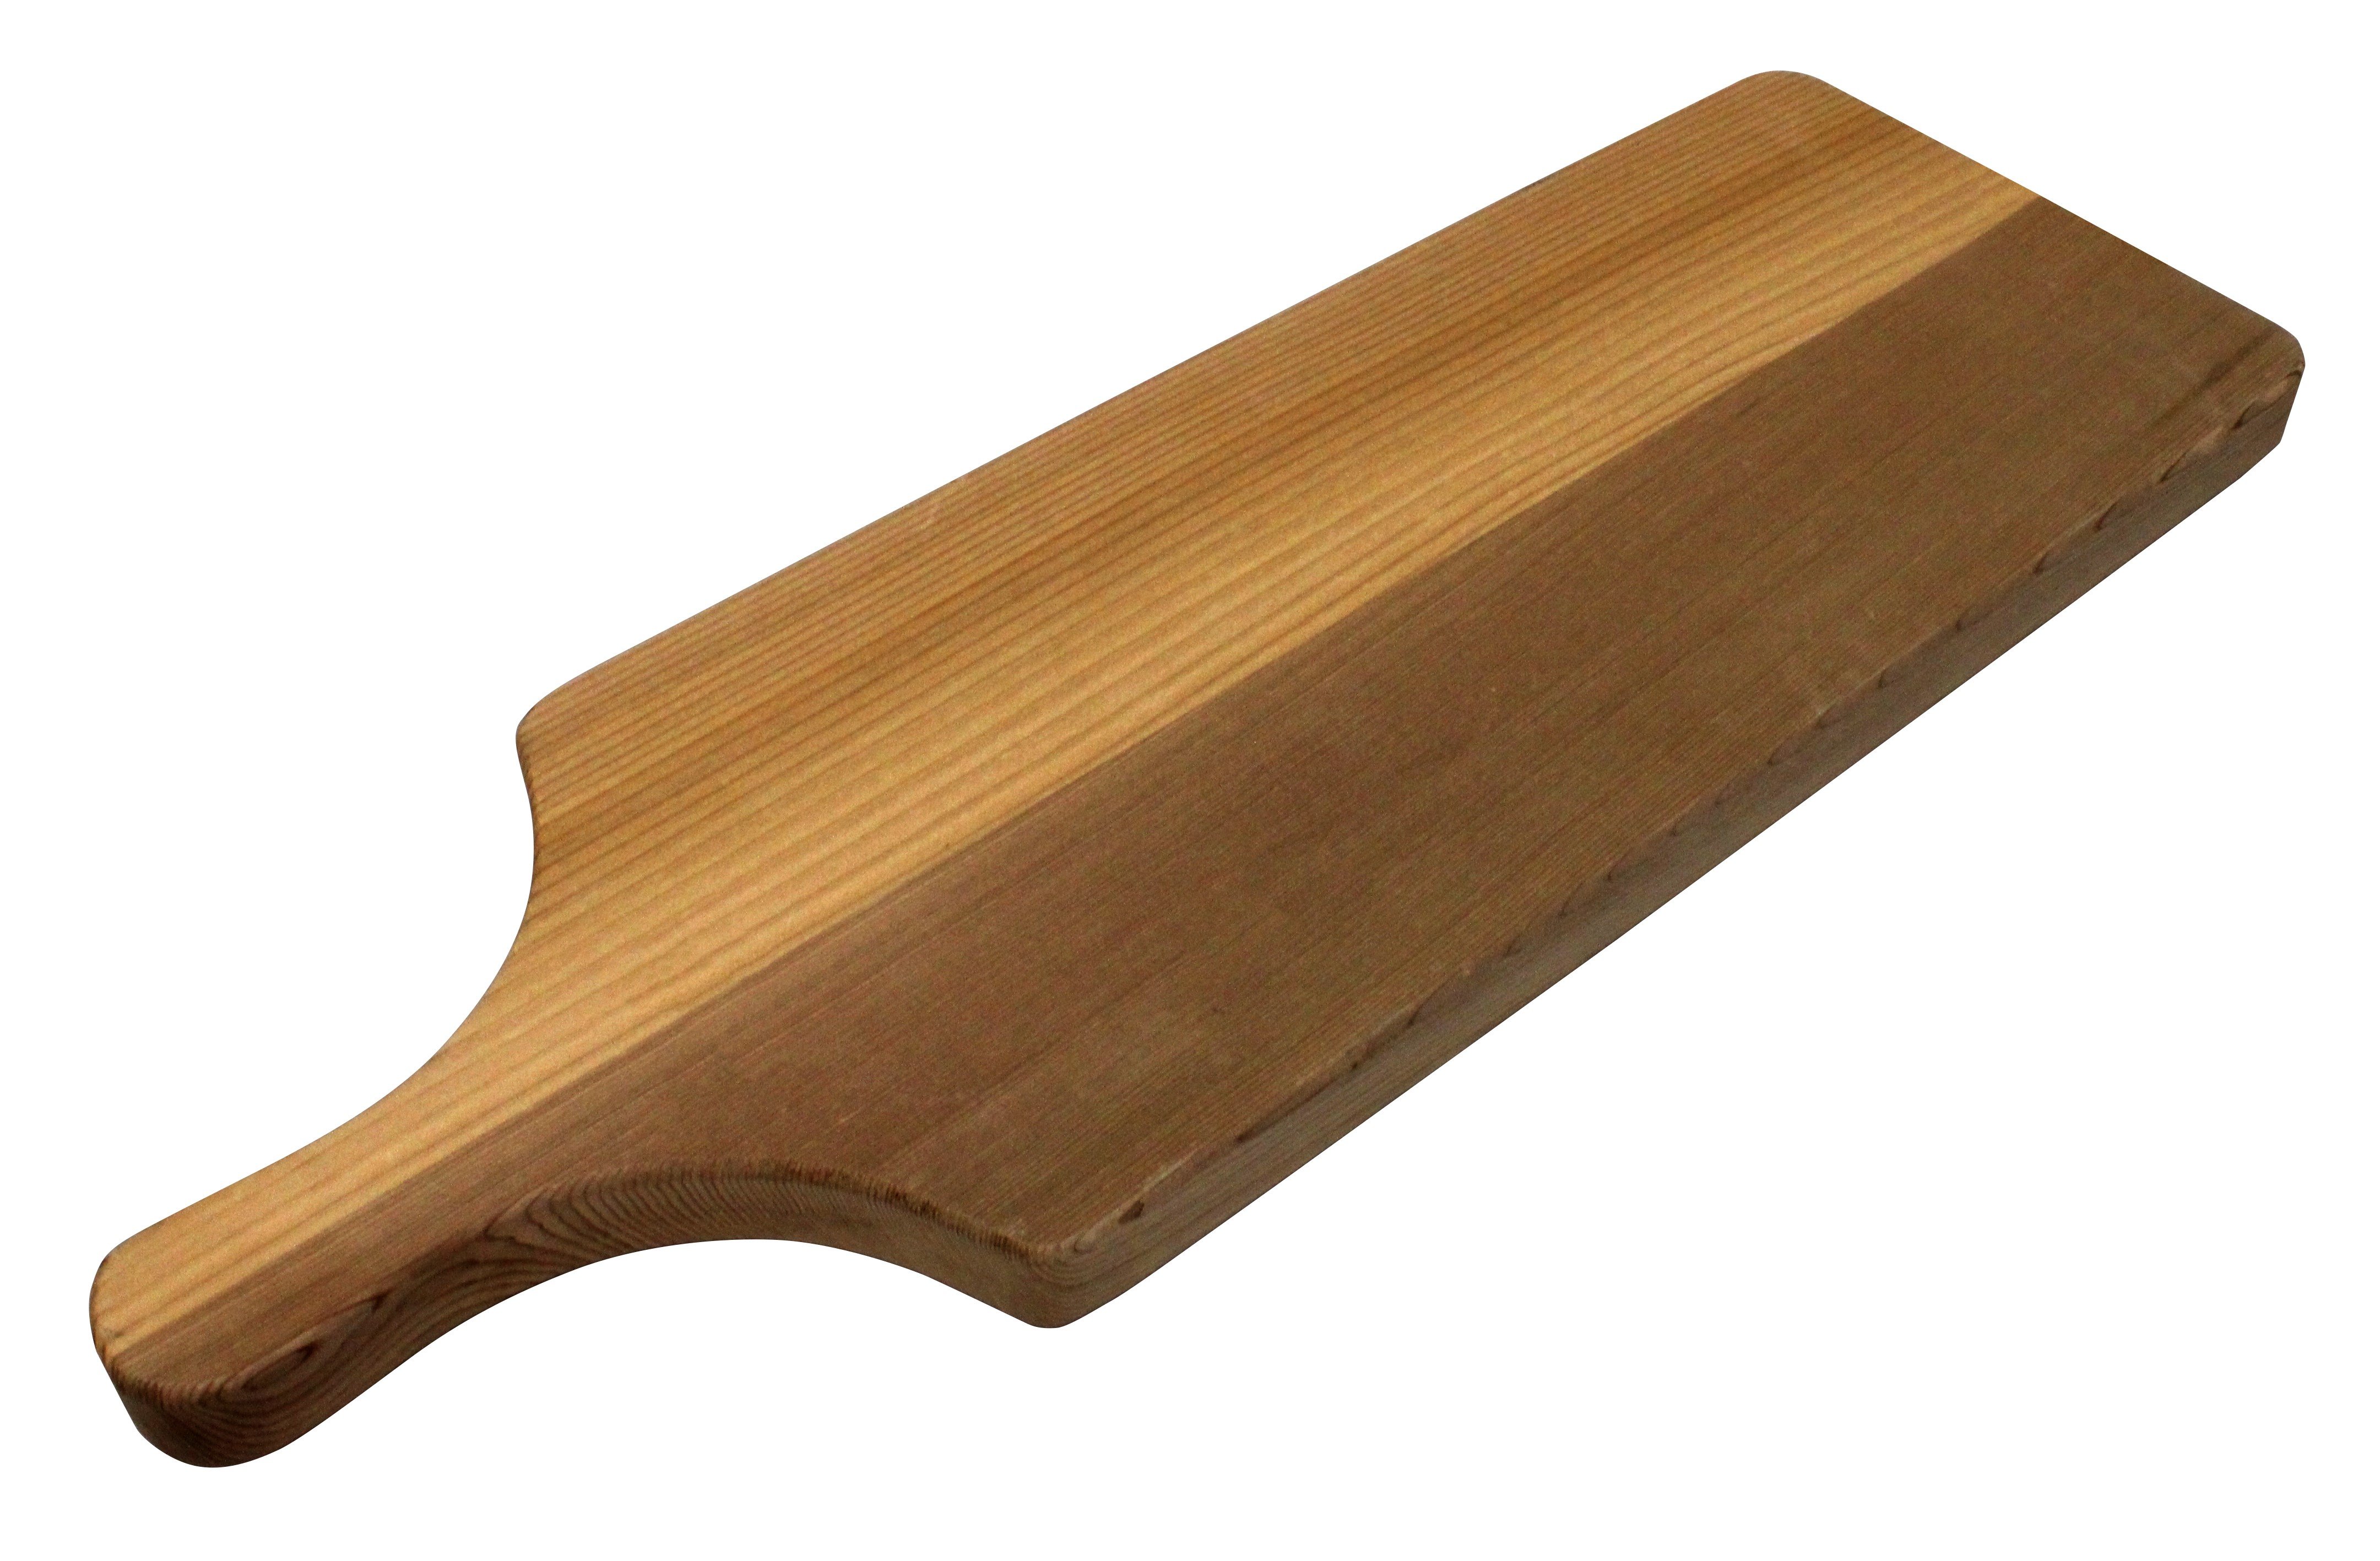 Handcrafted Cedar Cutting Board